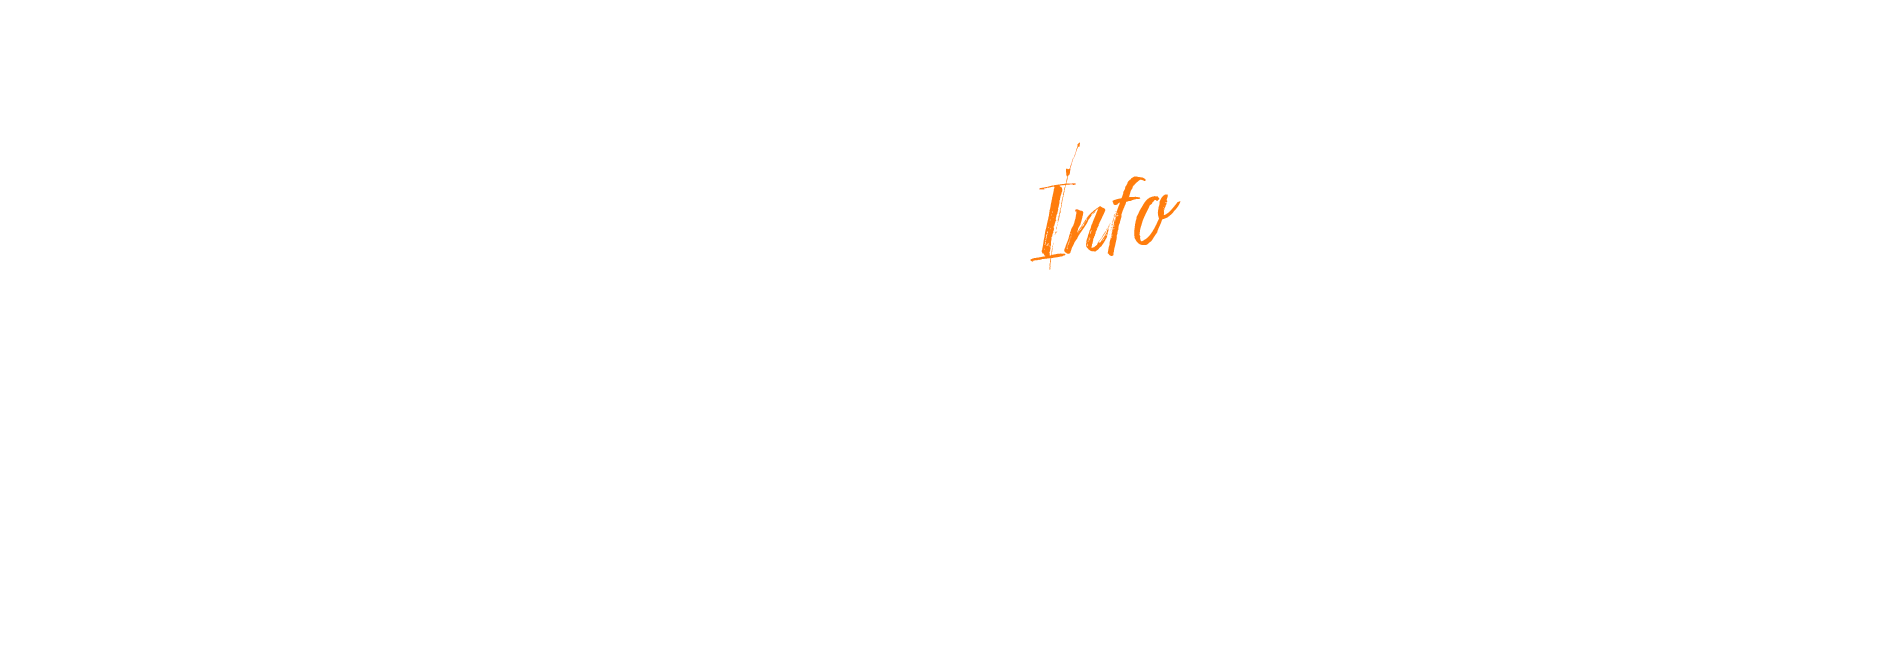 banner_recruit_fg